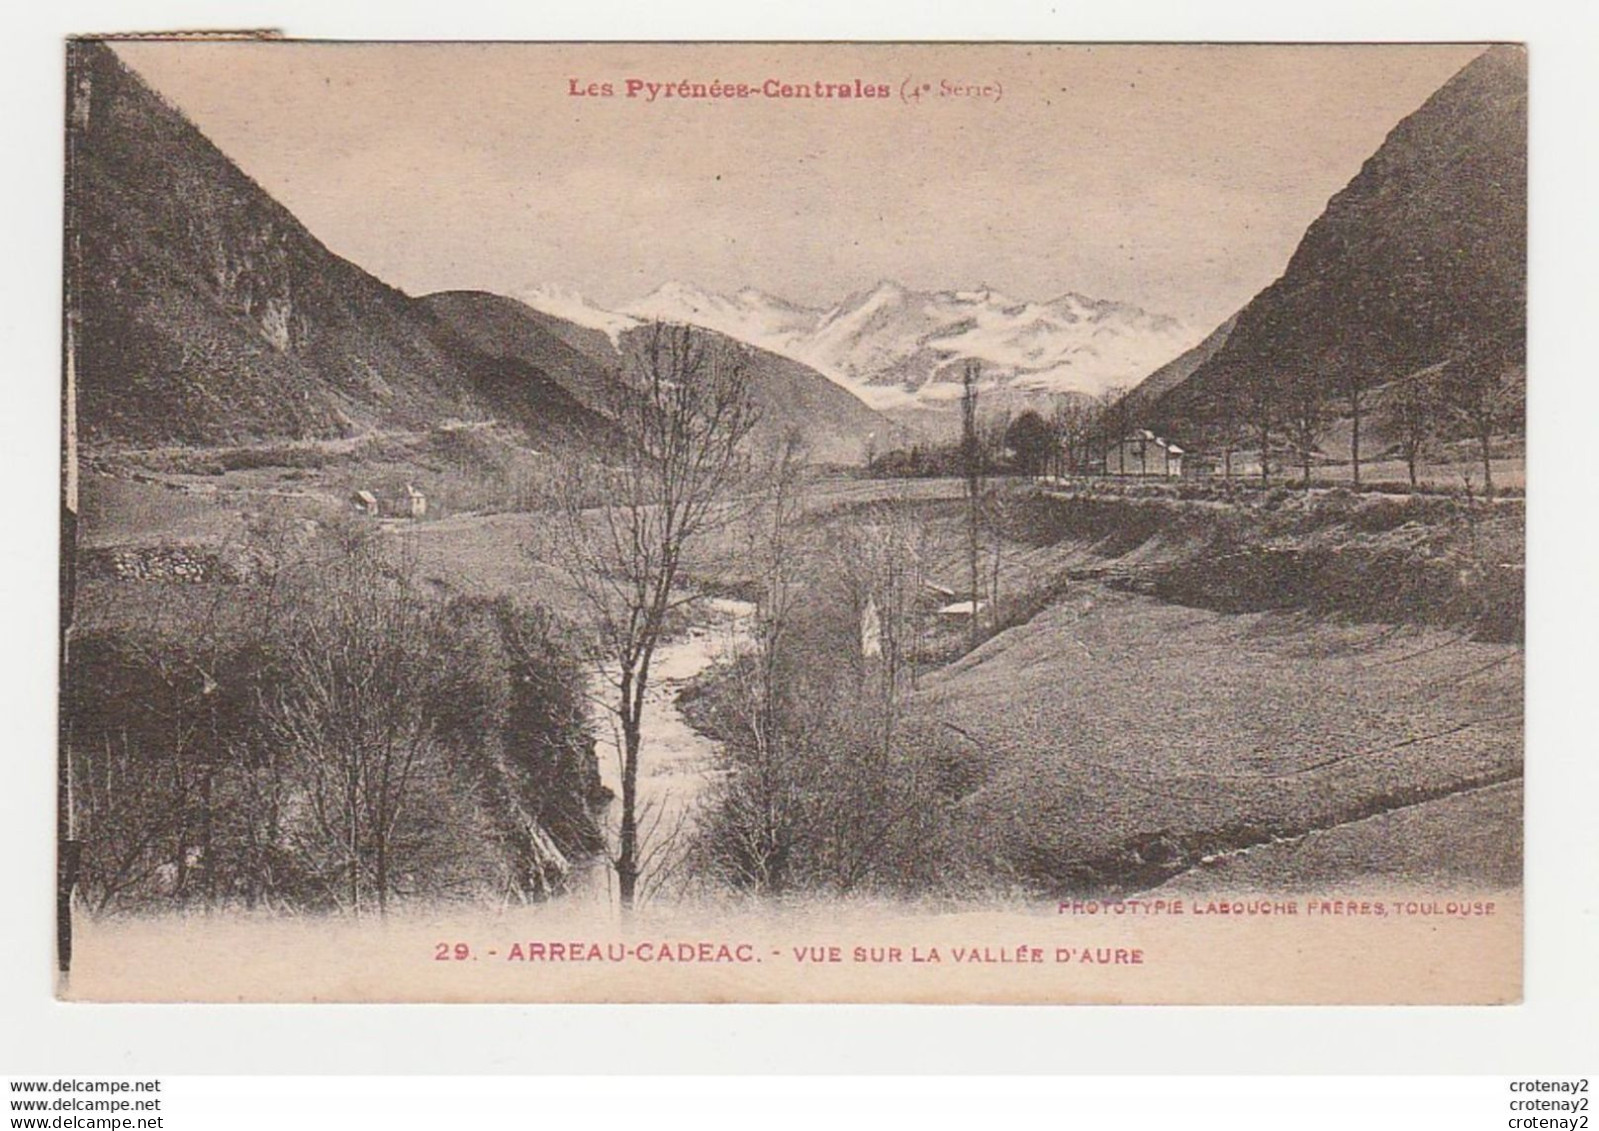 65 ARREAU CADEAC Vers Vielle Aure N°29 De Labouche 4è Série Pyrénées Centrales Vue Sur La Vallée D'Aure VOIR DOS En 1932 - Vielle Aure